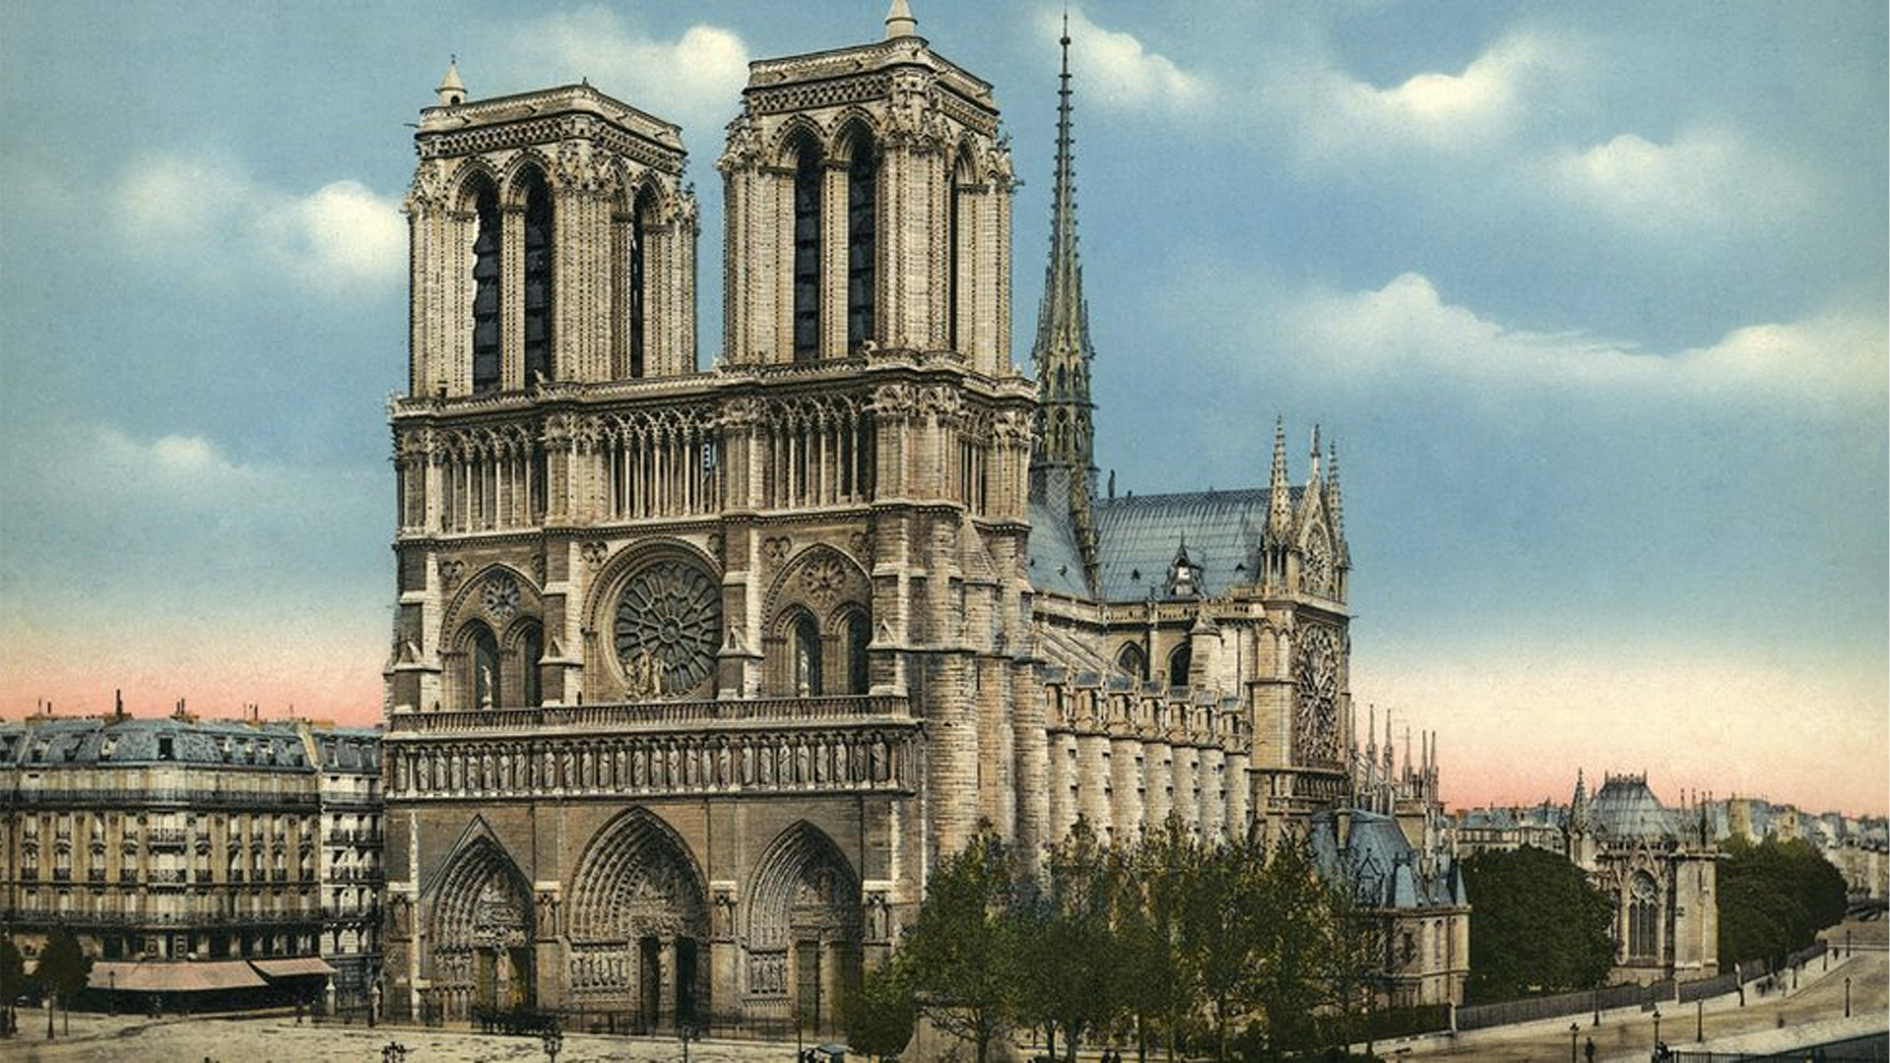 كاتدرائية نوتردام في باريس نفضت عنها رماد الحريق وبدات تستعيد رونقها